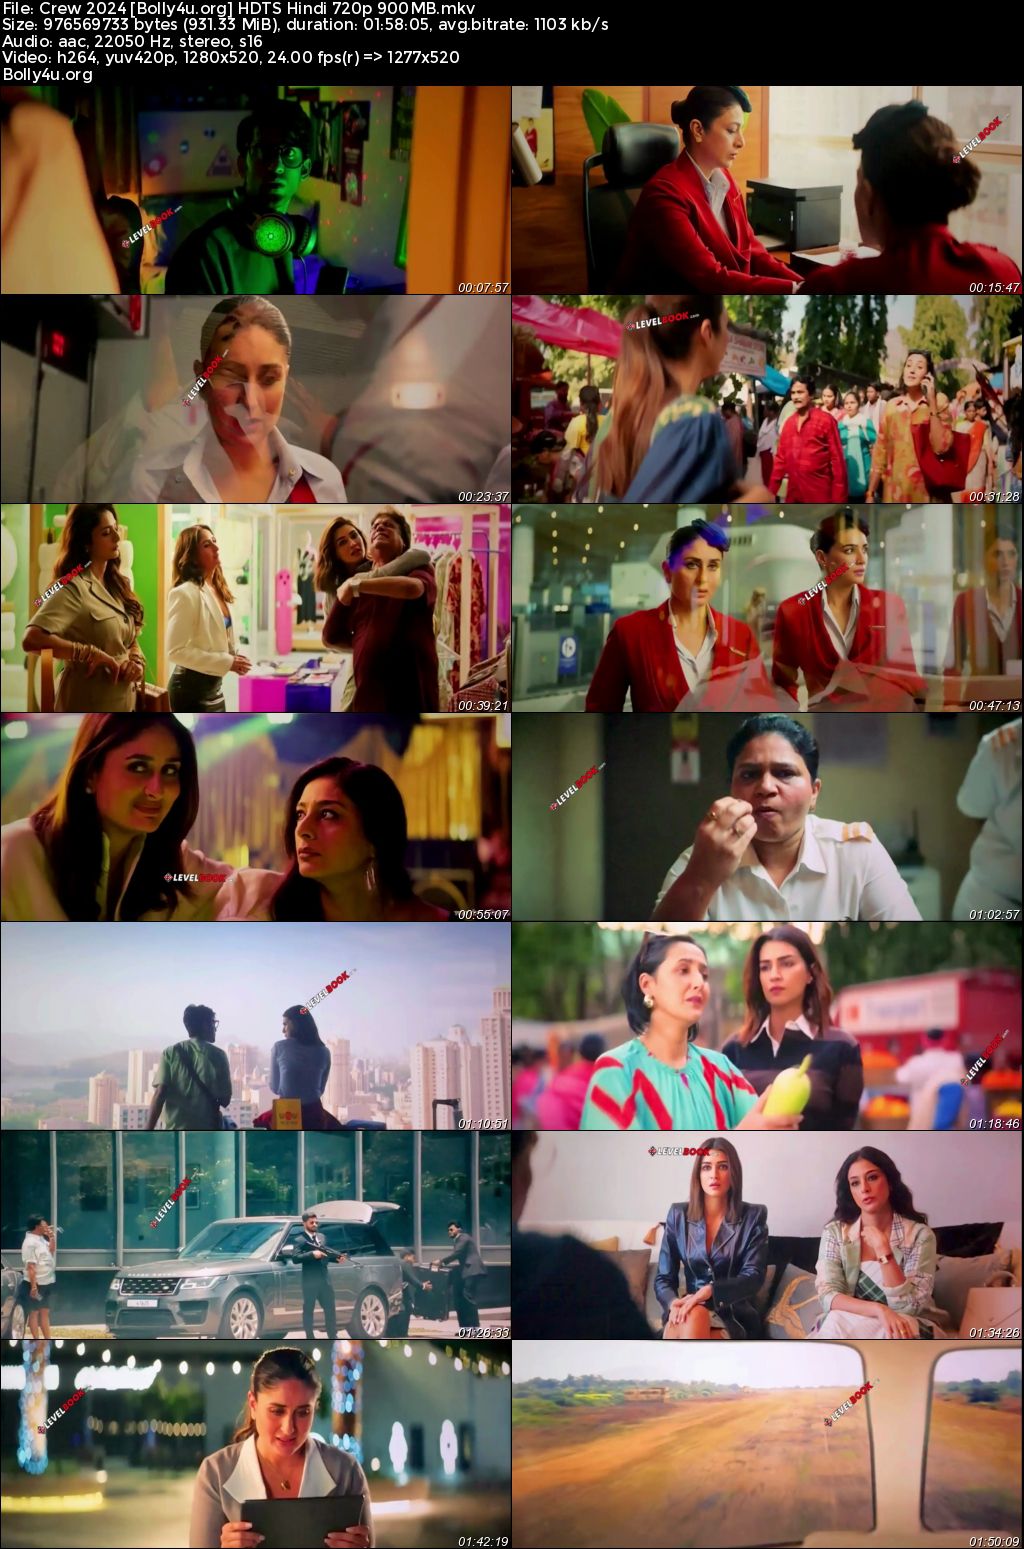 Crew 2024 HDTS Hindi Full Movie Download 1080p 720p 480p